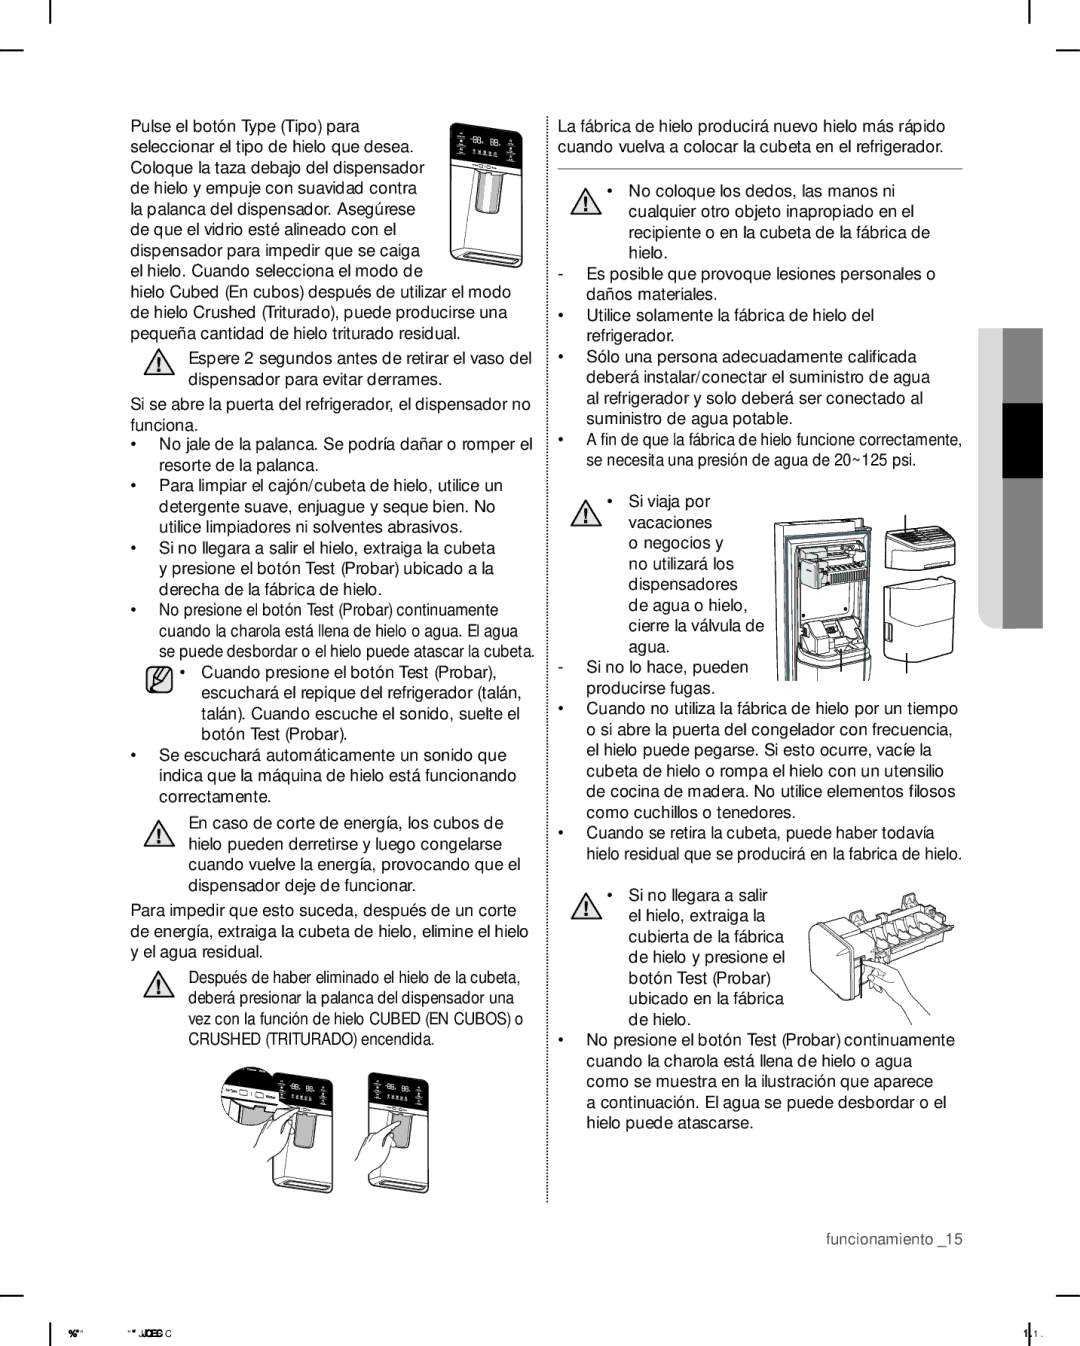 Samsung RSG307 user manual Crushed Triturado encendida, No coloque los dedos, las manos ni, Si no llegara a salir, De hielo 